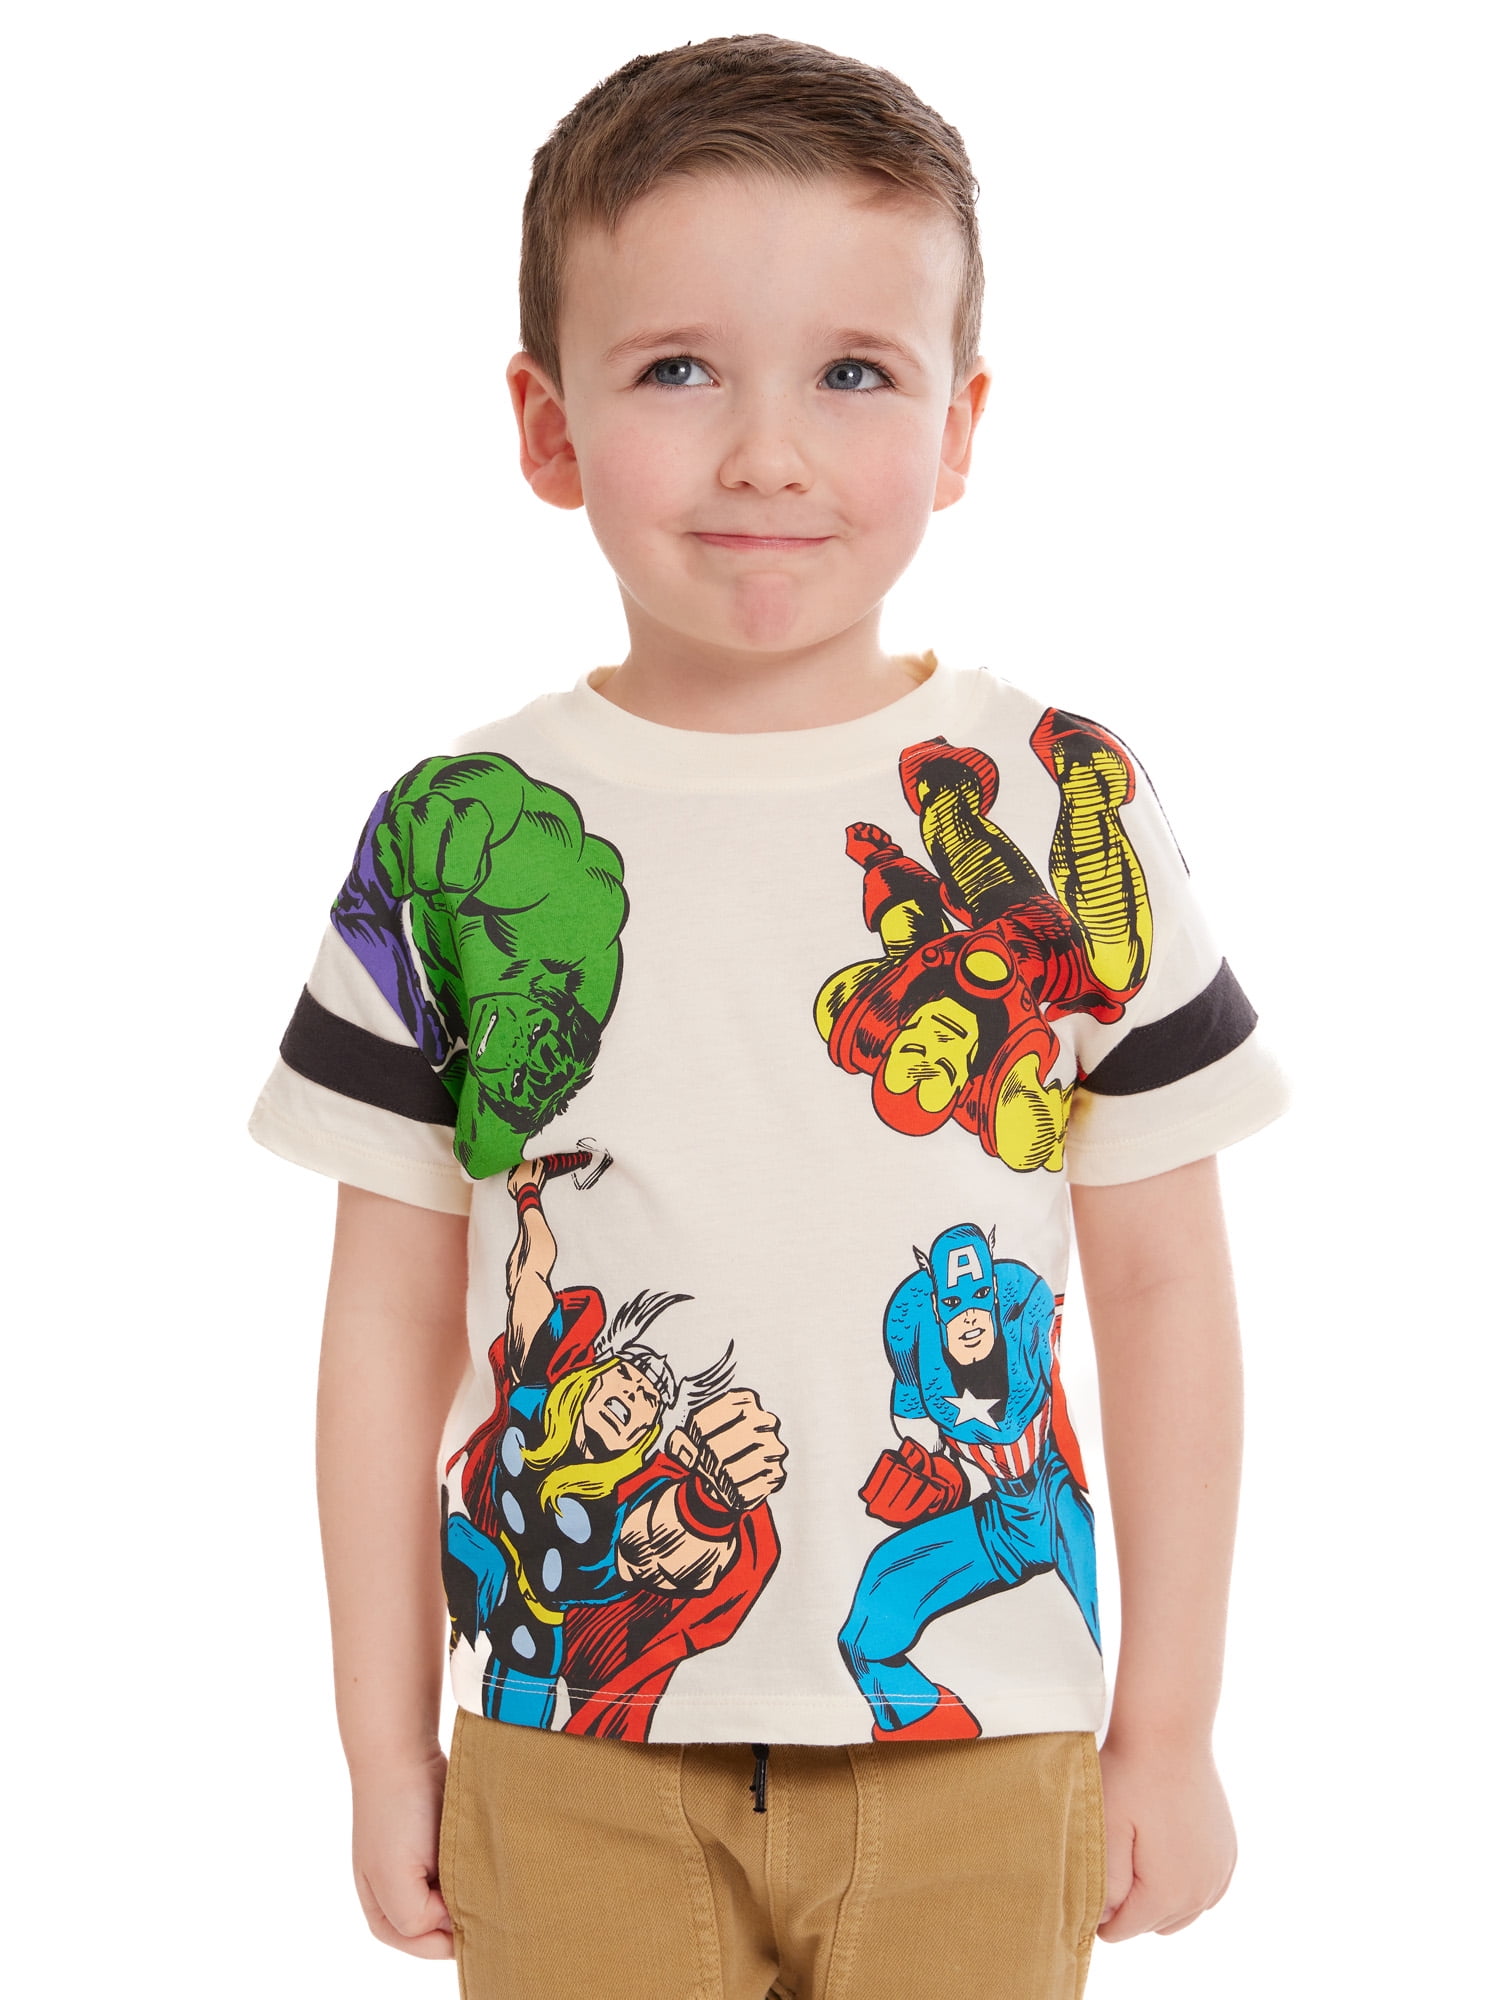 Marvel Toddler Boys Avengers Tee, Sizes 12M-5T - Walmart.com